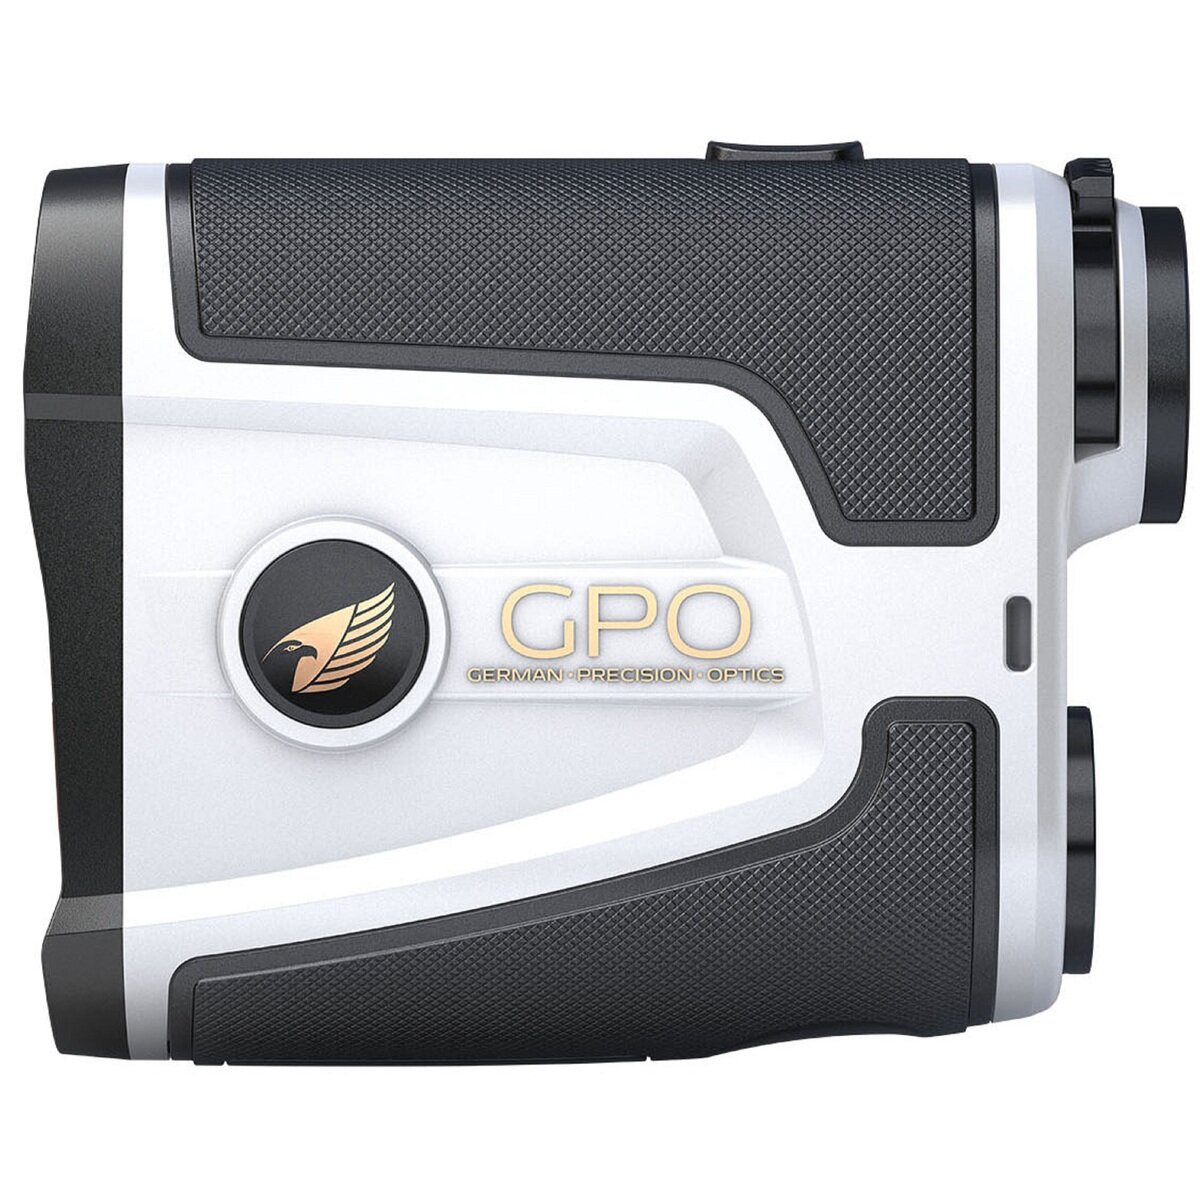 GPO フラッグマスター 1800 ゴルフレーザー距離計測器 | Costco Japan